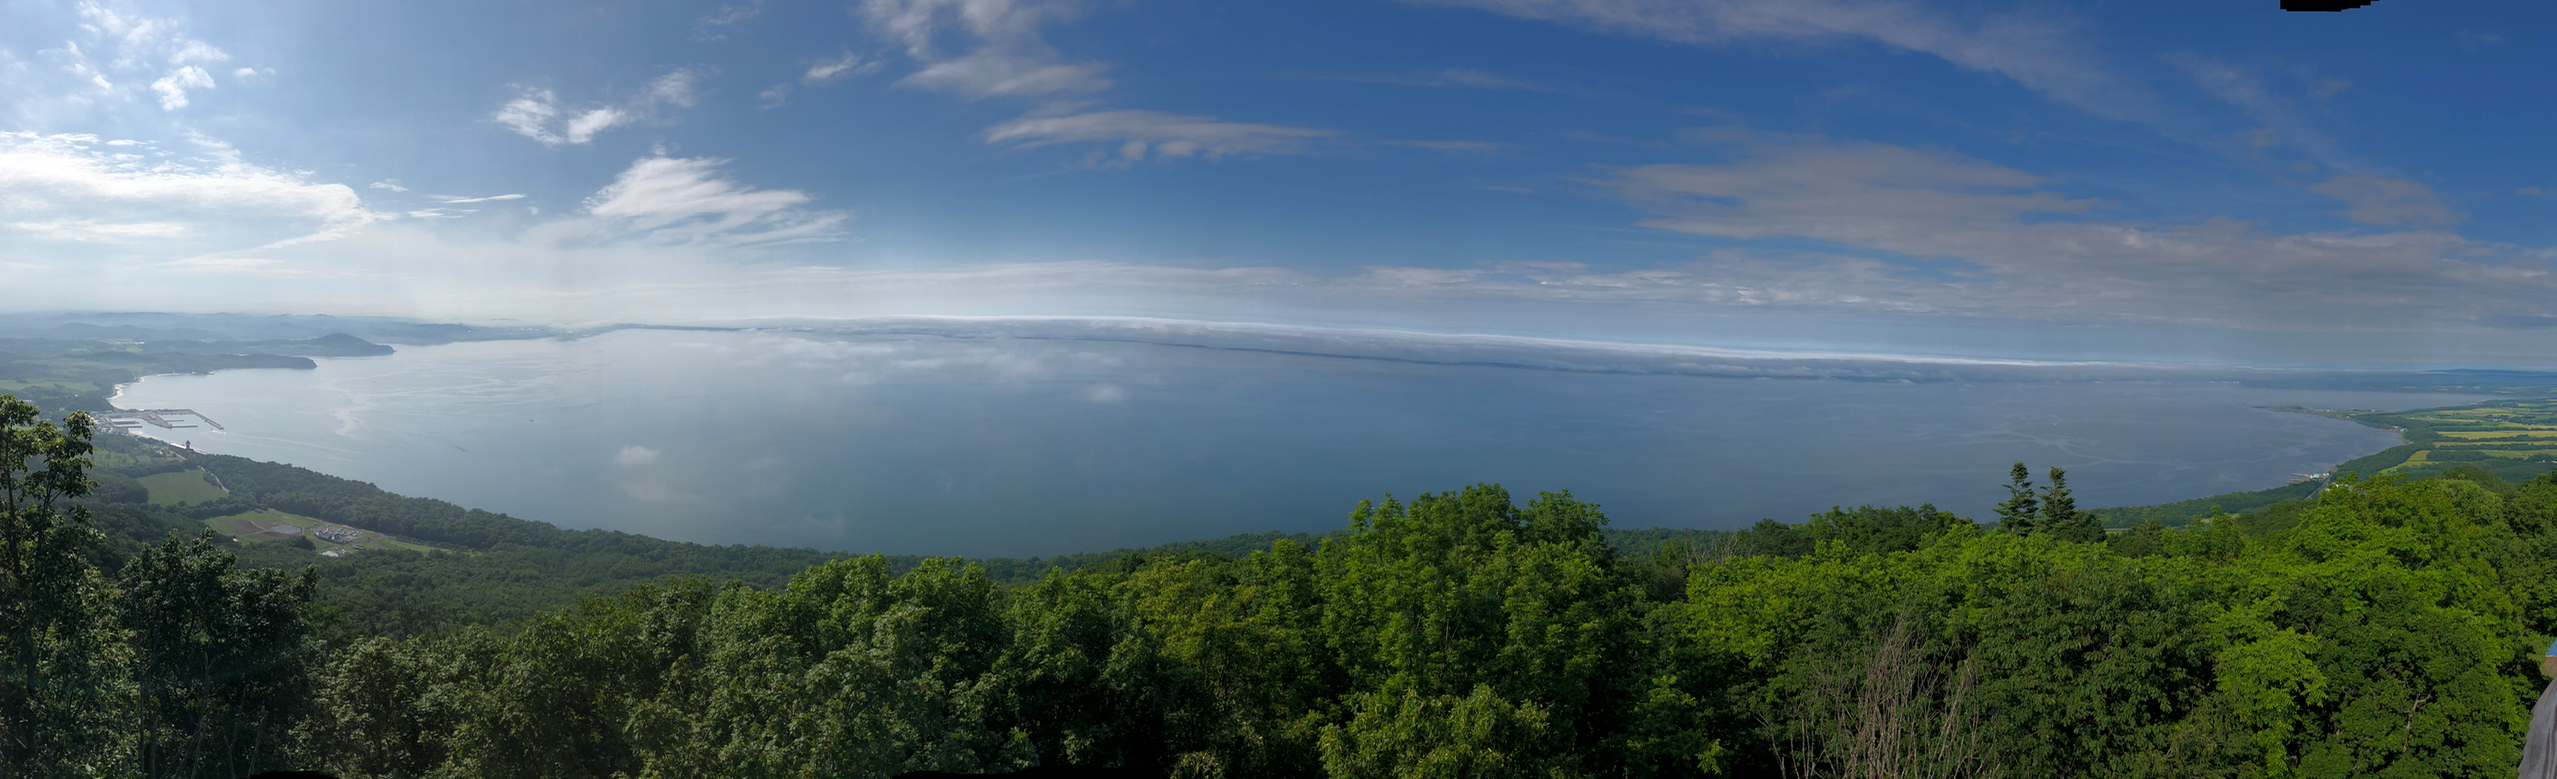 サロマ湖展望台からのサロマ湖全景